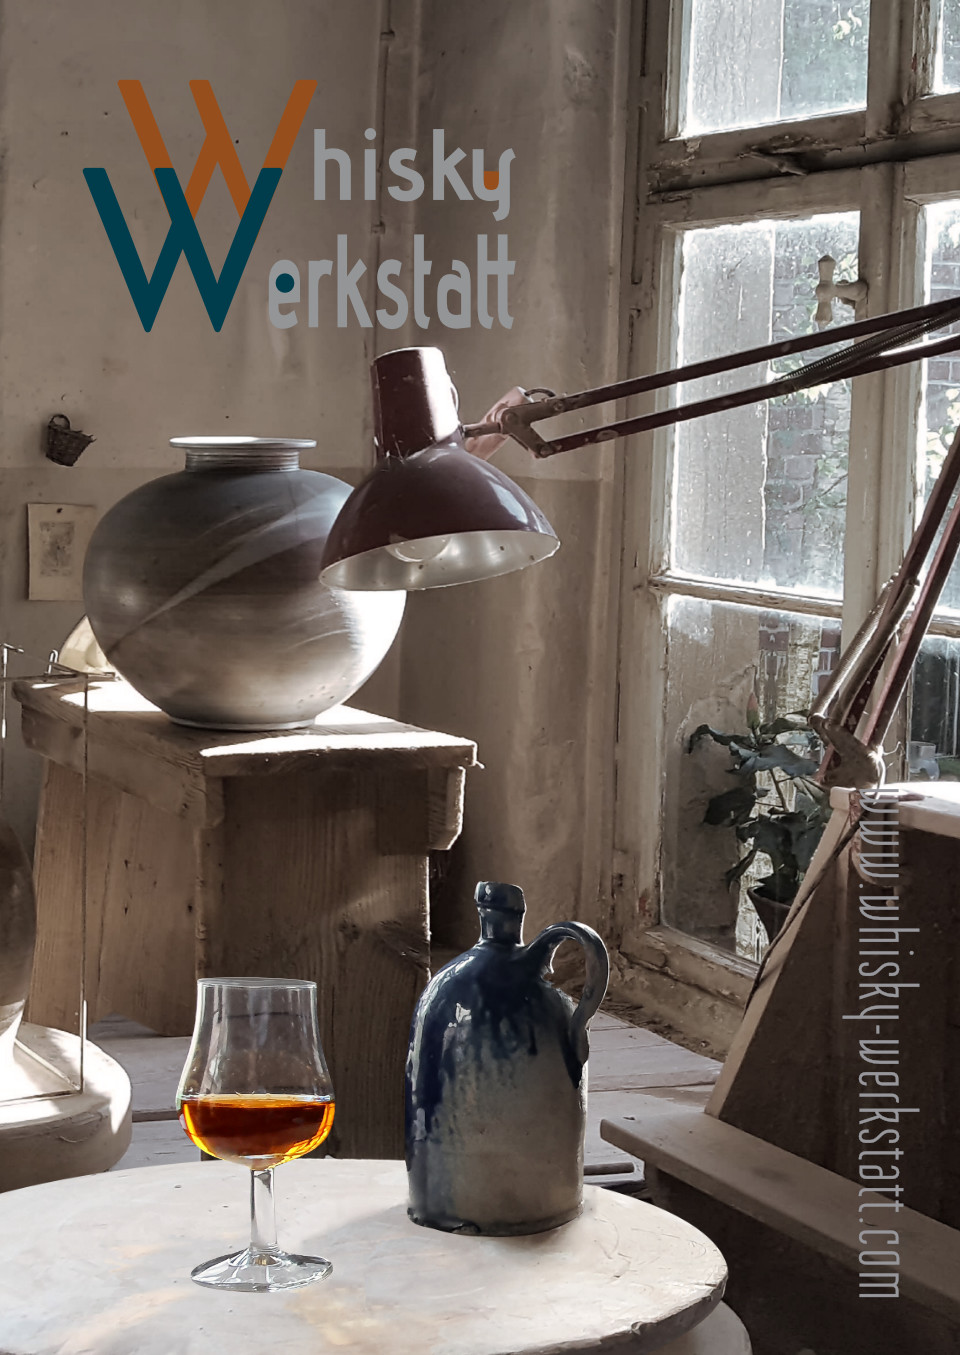 Whisky Tasting in der Whisky Werkstatt